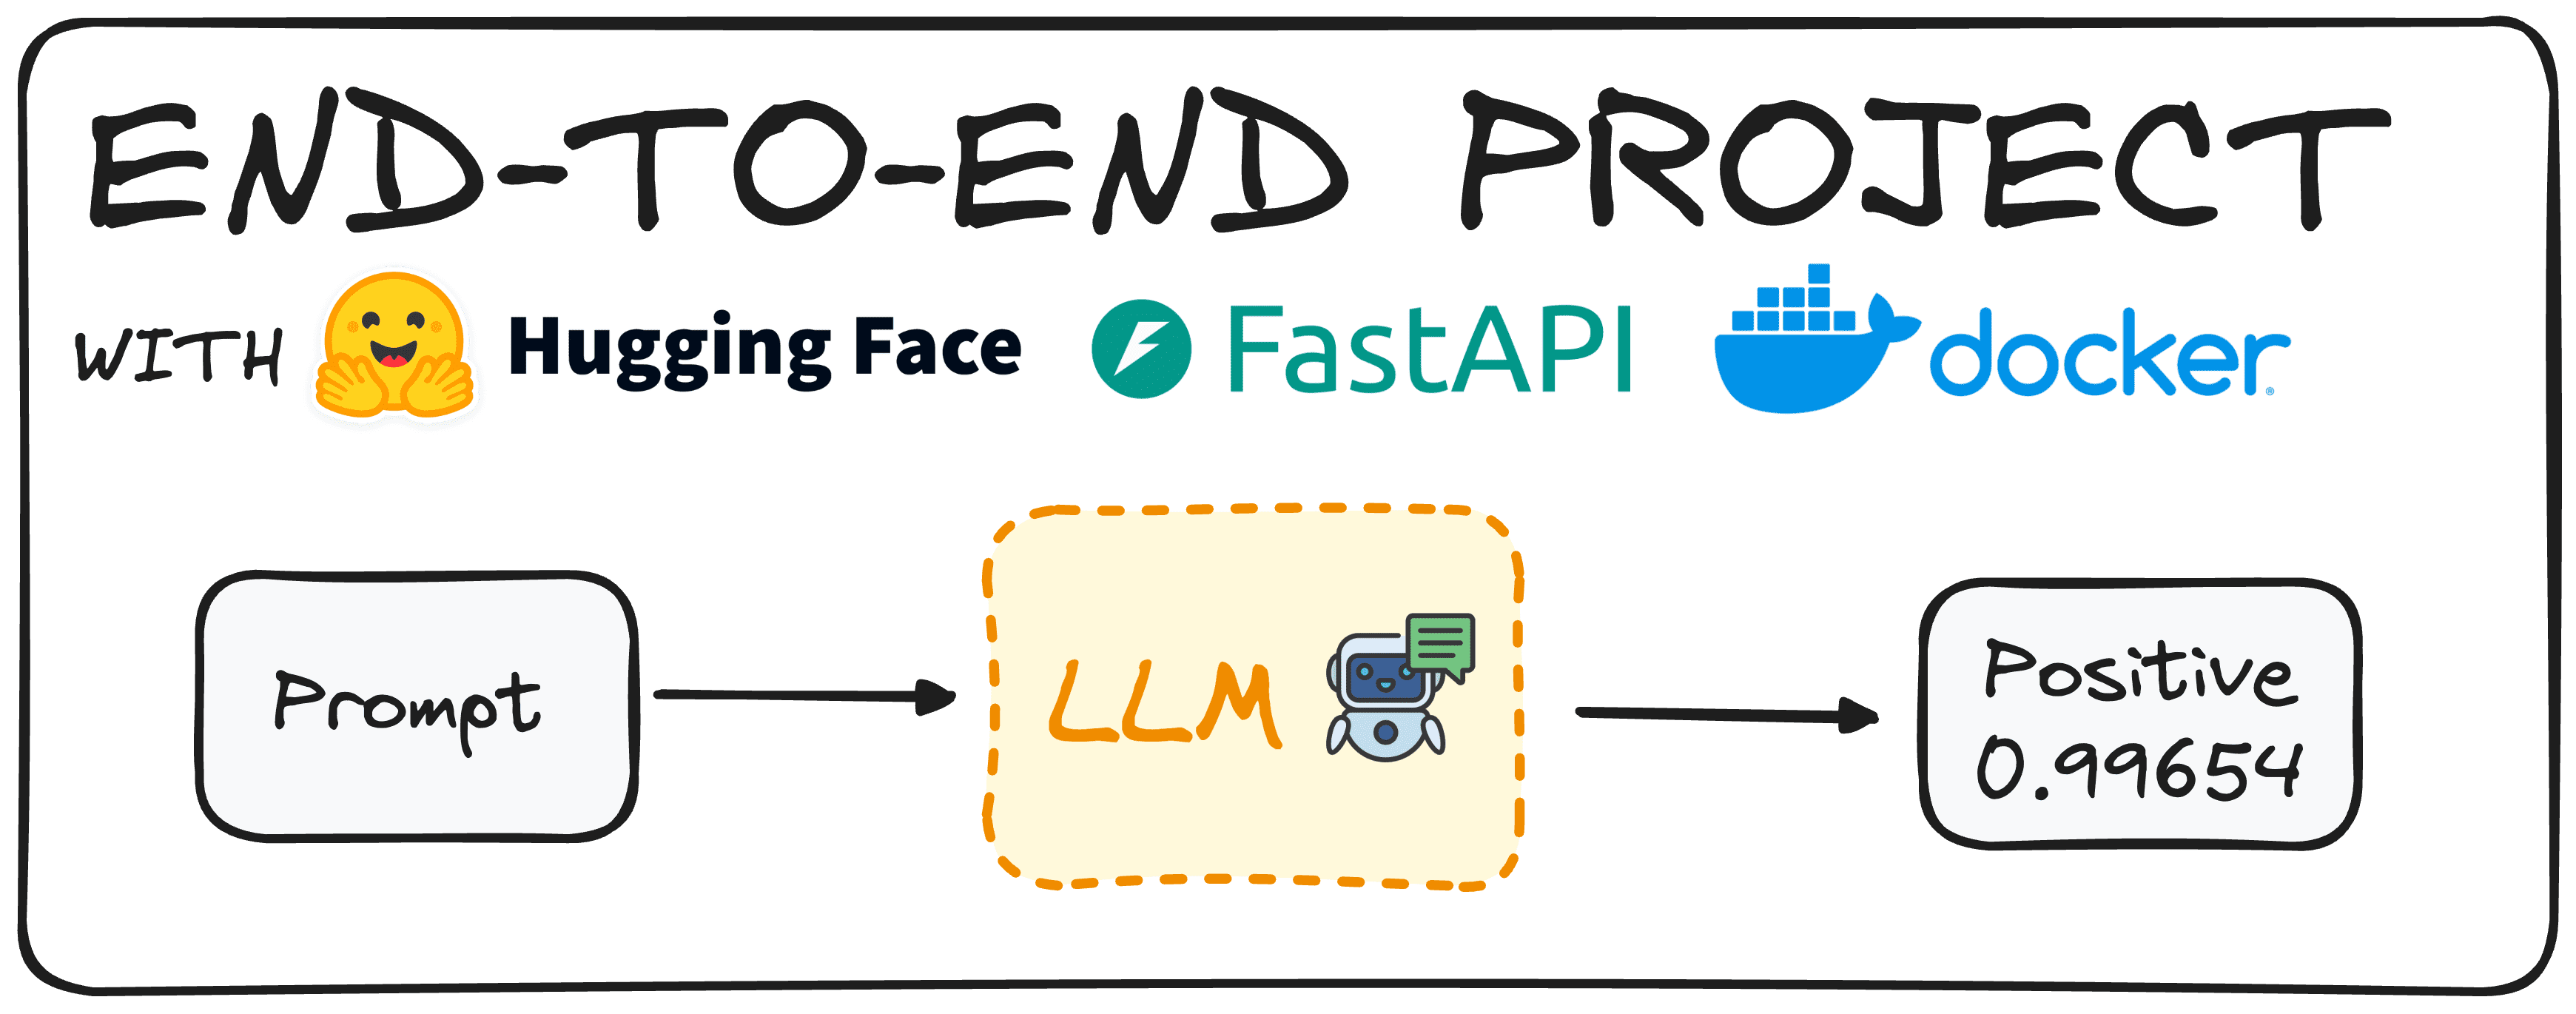 Hauptcover. Erstellen eines End-to-End-Projekts mit Hugging Face, FastAPI und Docker.